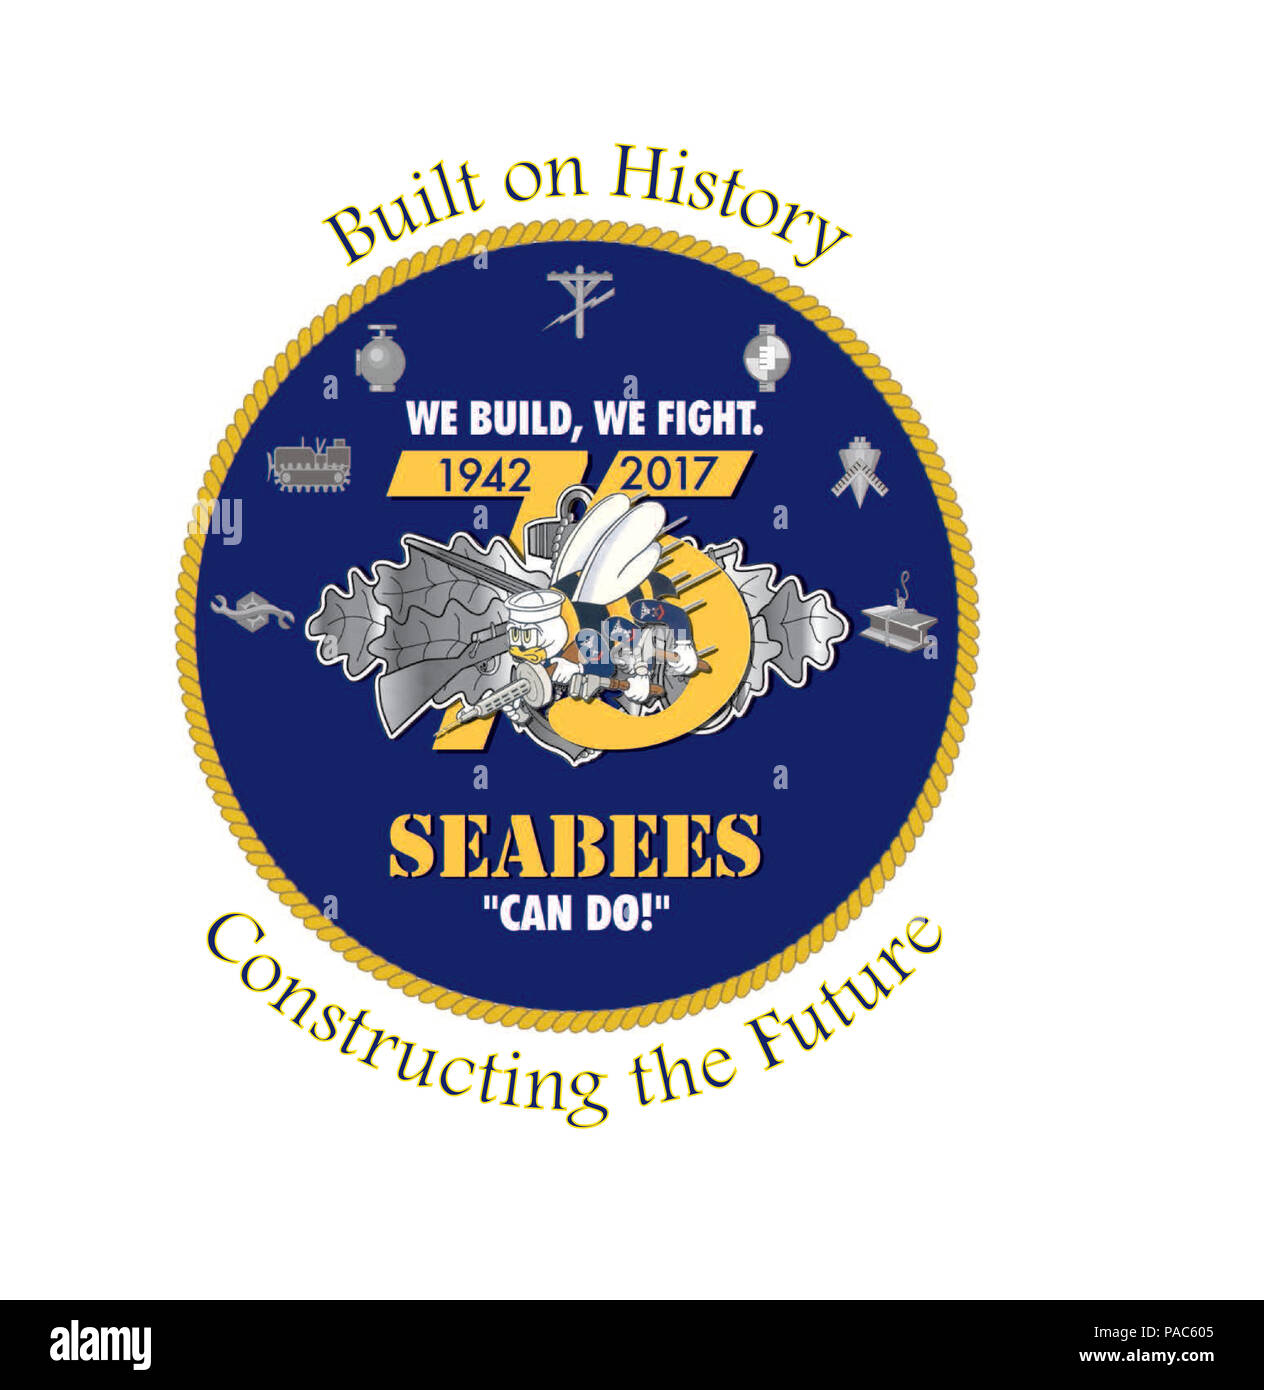 160307-N-ZZ999-110 WASHINGTON (7 mars 2016) Le logo officiel pour le 75e anniversaire des Seabees. (U.S. Graphique/marine) Parution Banque D'Images